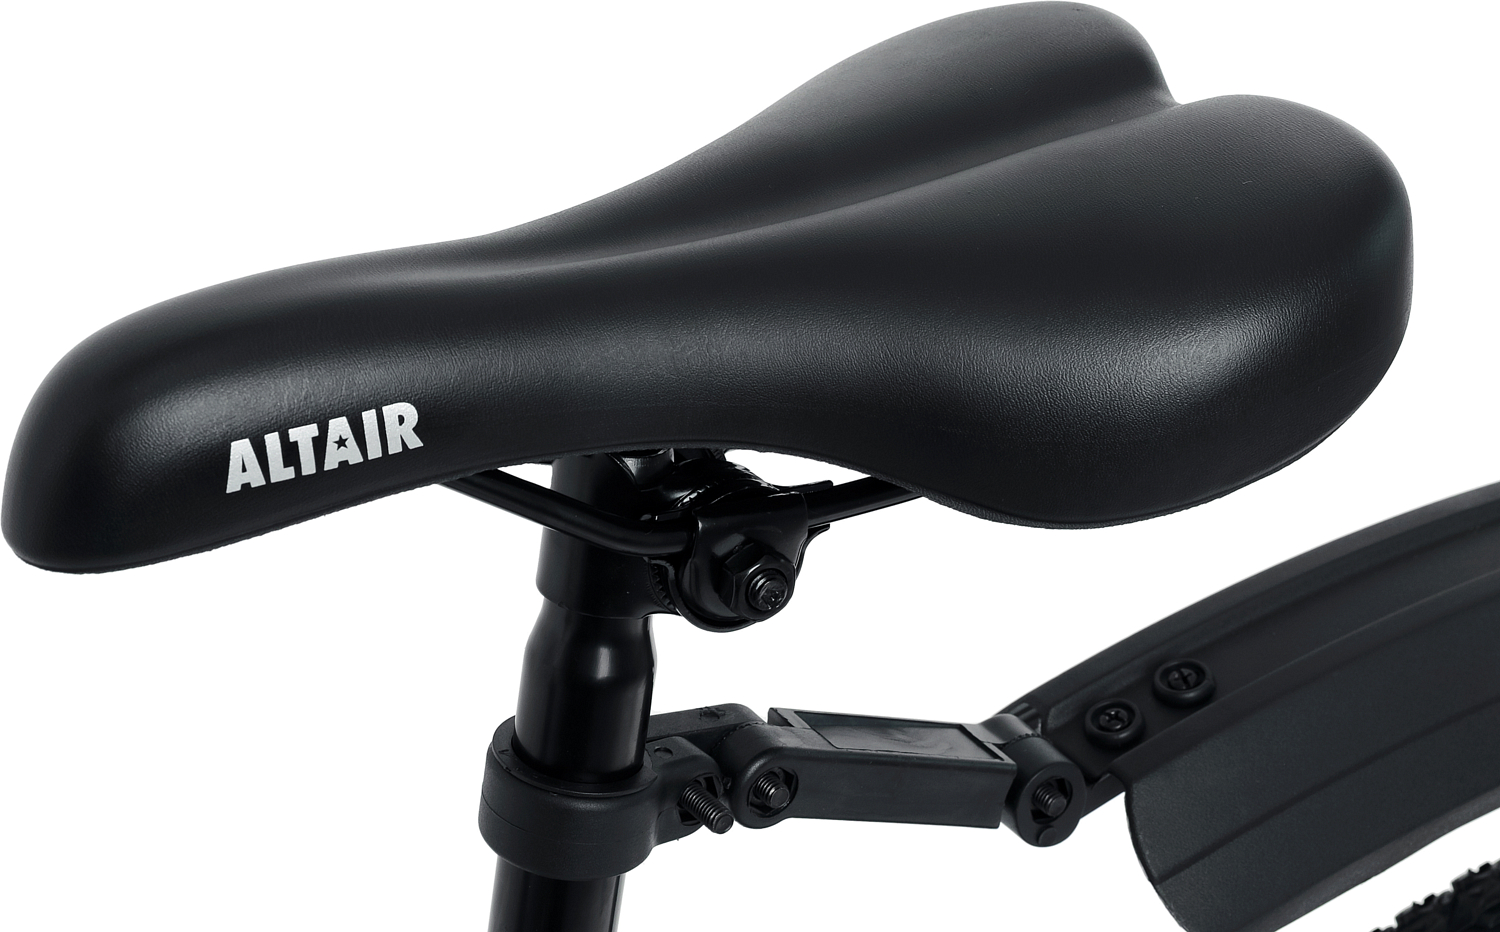 Велосипед Altair AL 29 D 2022 Темно-Синий/Серебристый